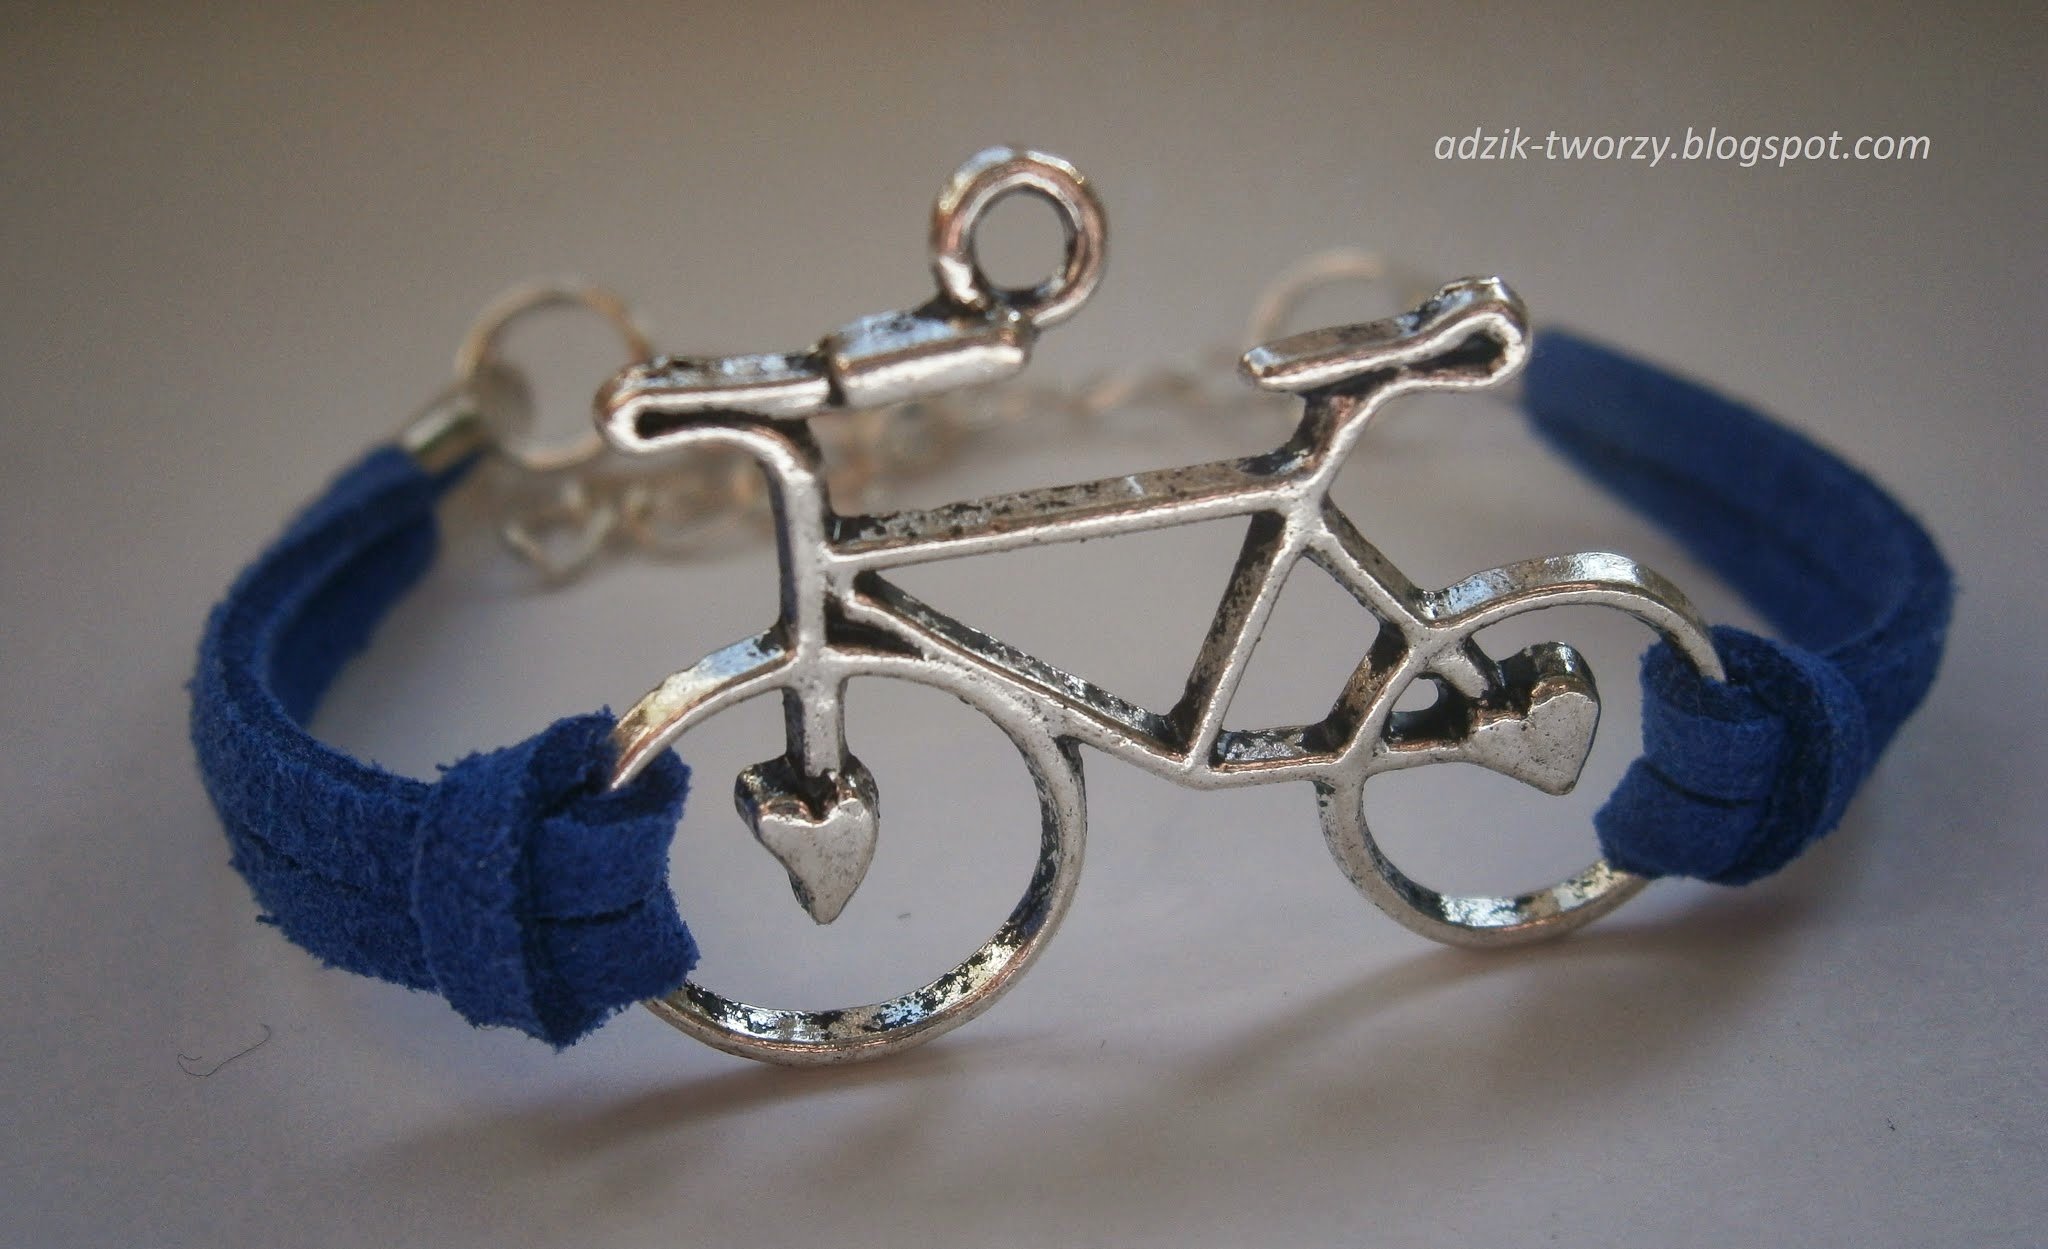 Niebieska bransoletka z rowerem, z zamszowych sznurków - Adzik tworzy